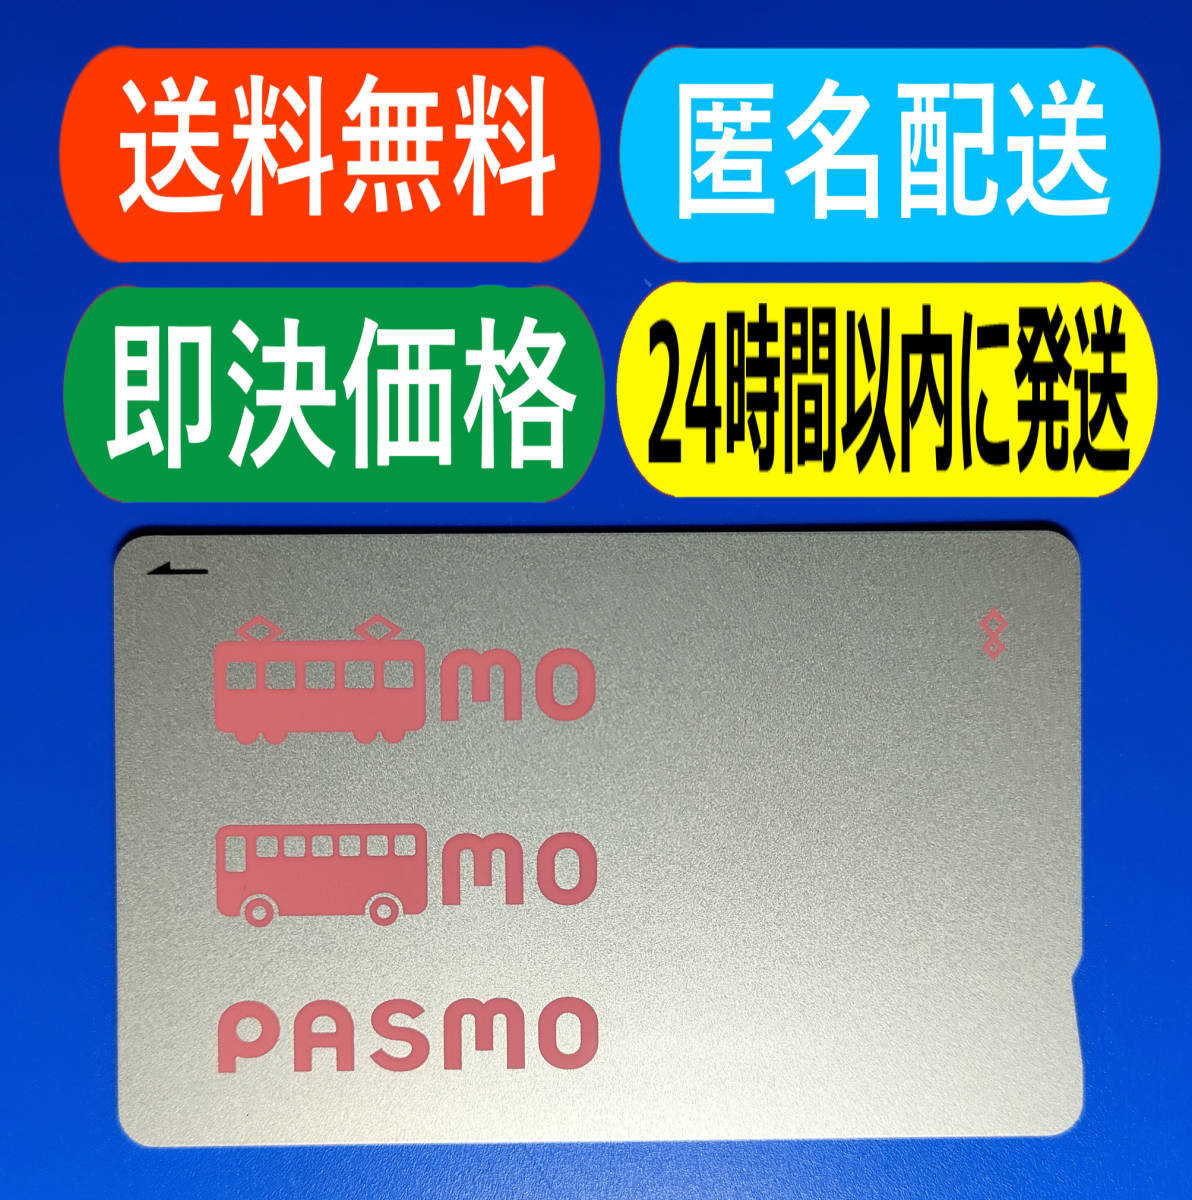 い出のひと時に、とびきりのおしゃれを！ 無記名 PASMO パスモ チャージなし 美品 送料無料 交通系ICカード